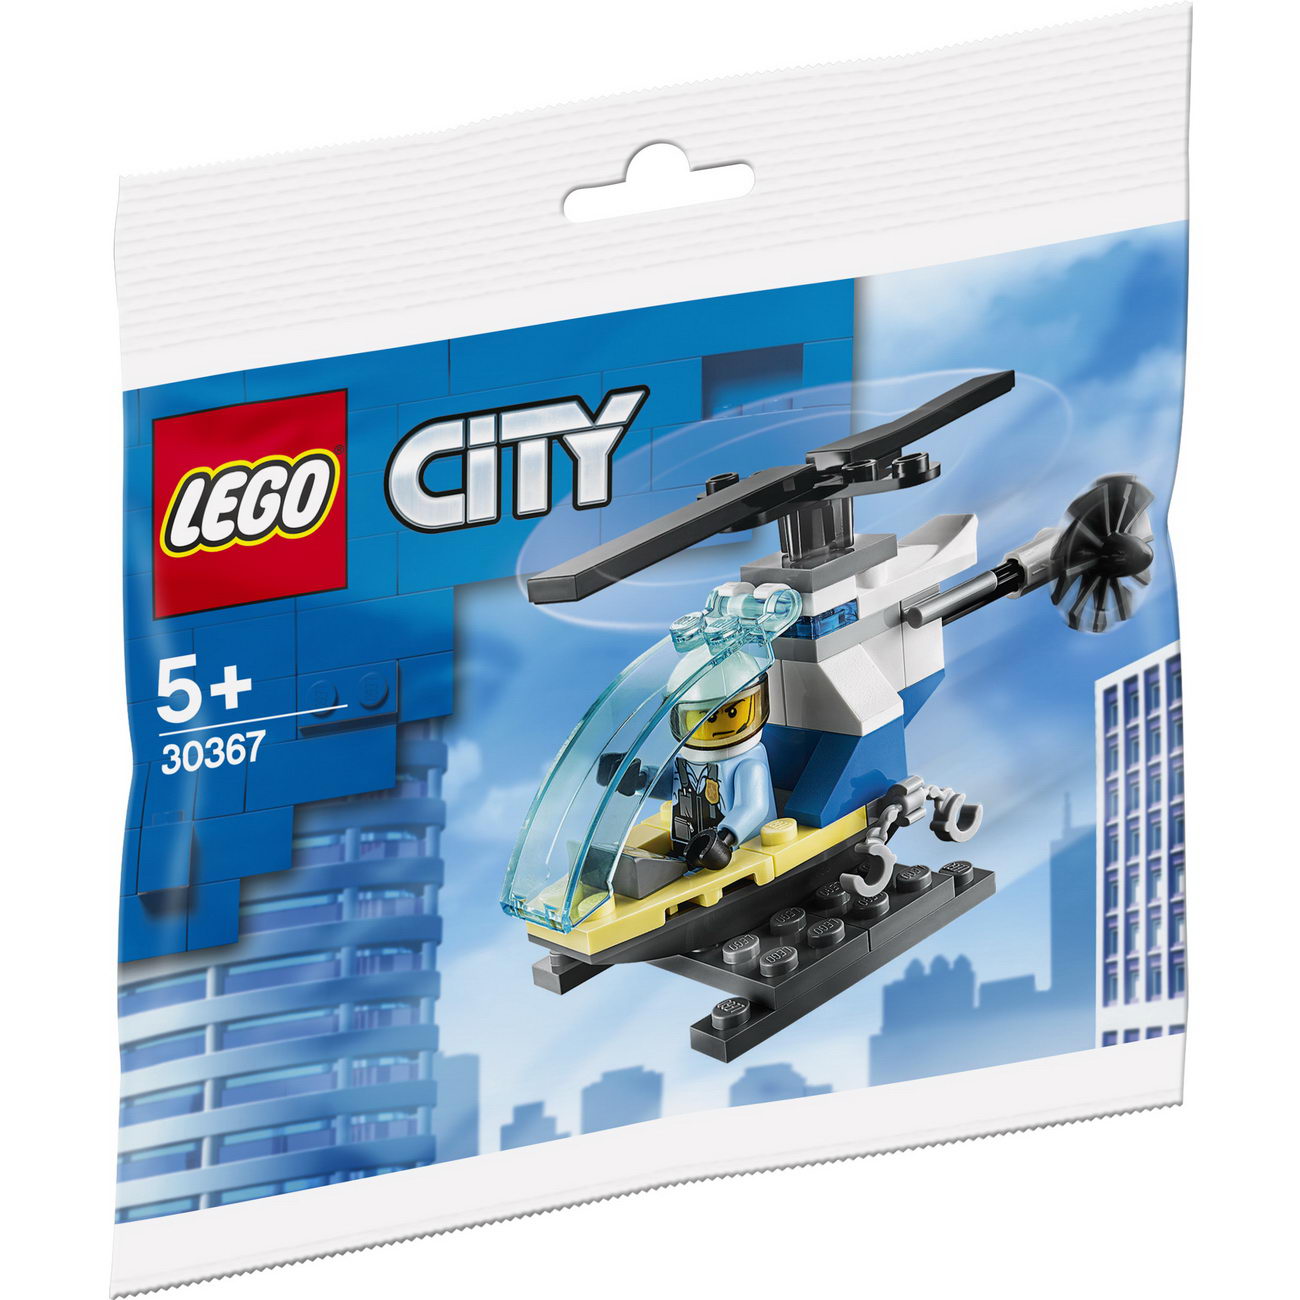 LEGO City 30367 - Polizeihubschrauber